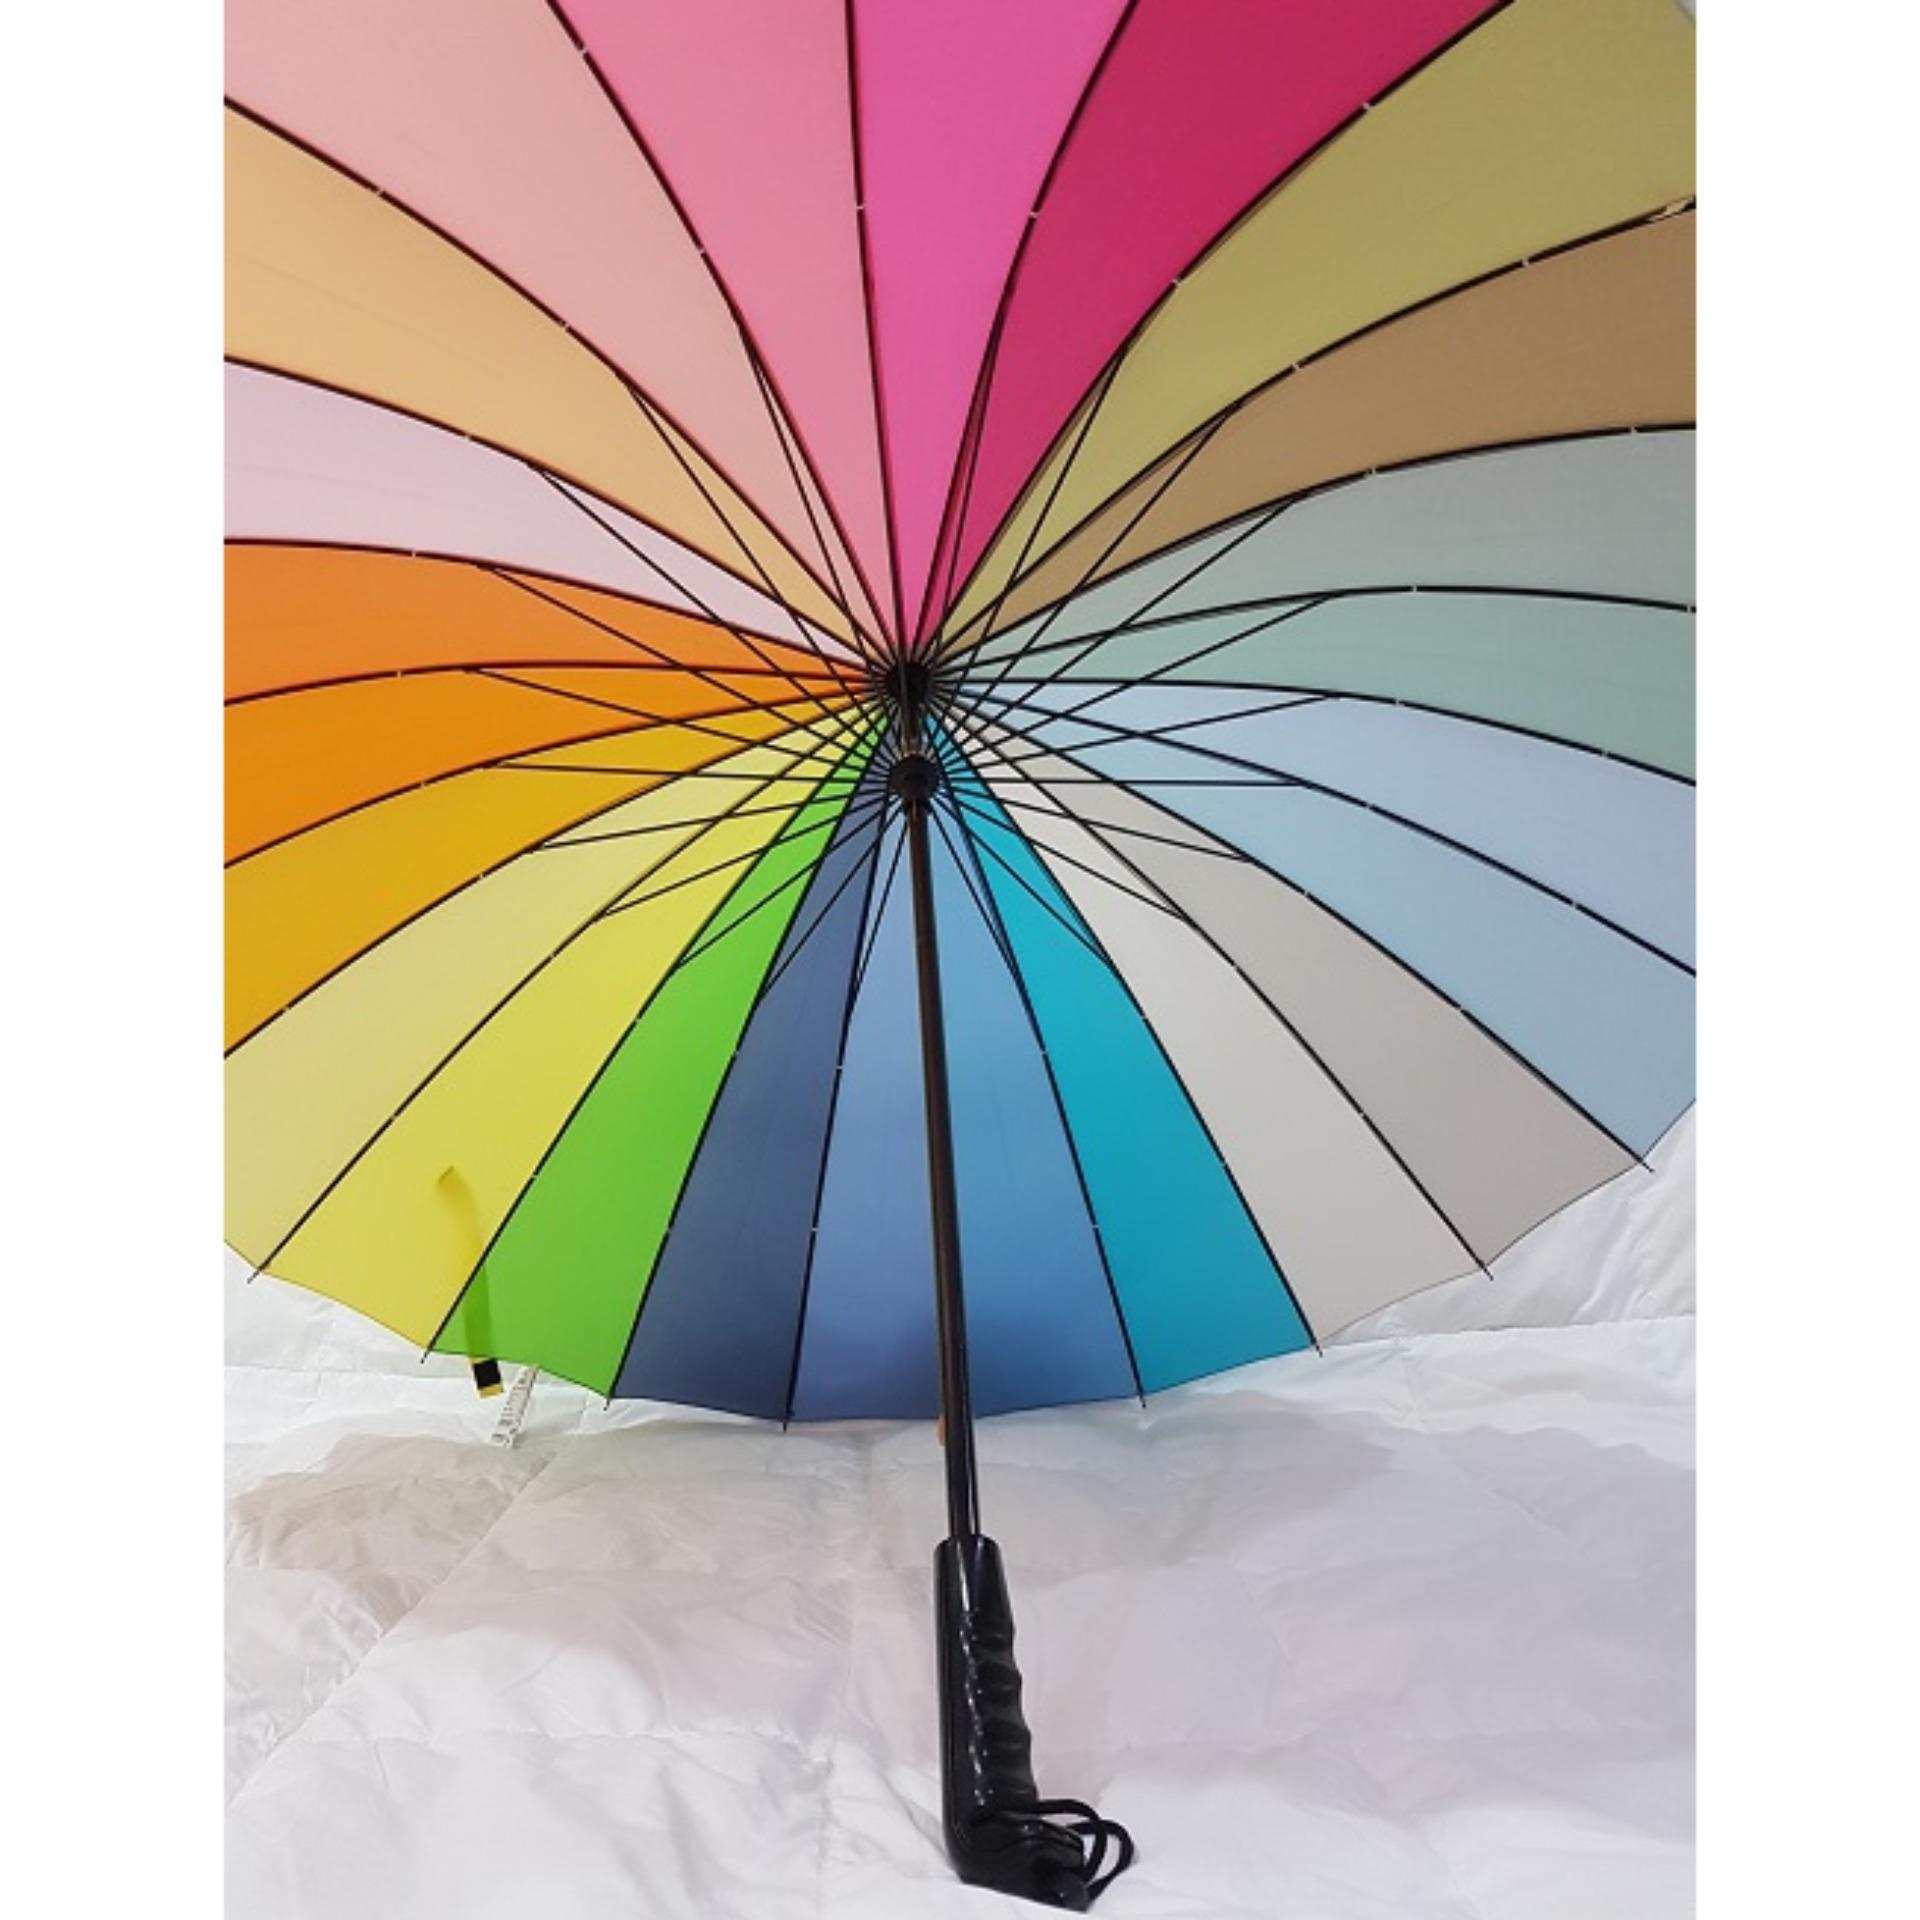 Payung Pakaian Hujan Anak Perempuan Lazada